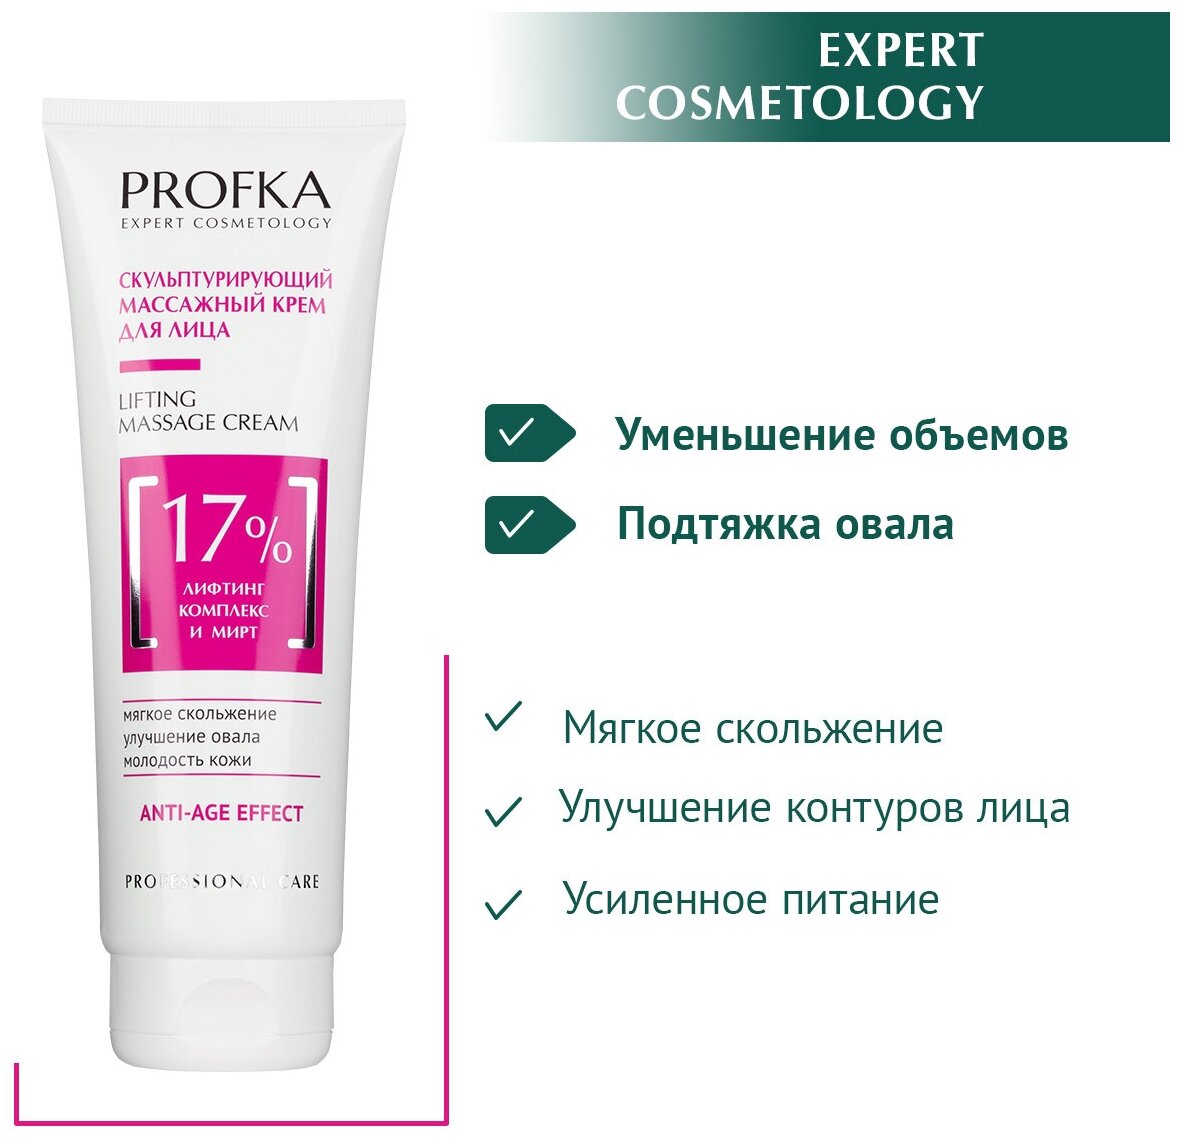 PROFKA Expert Cosmetology Скульптурирующий массажный крем для лица Lifting Massage Cream с лифтинг-комплексом и миртом,250 мл